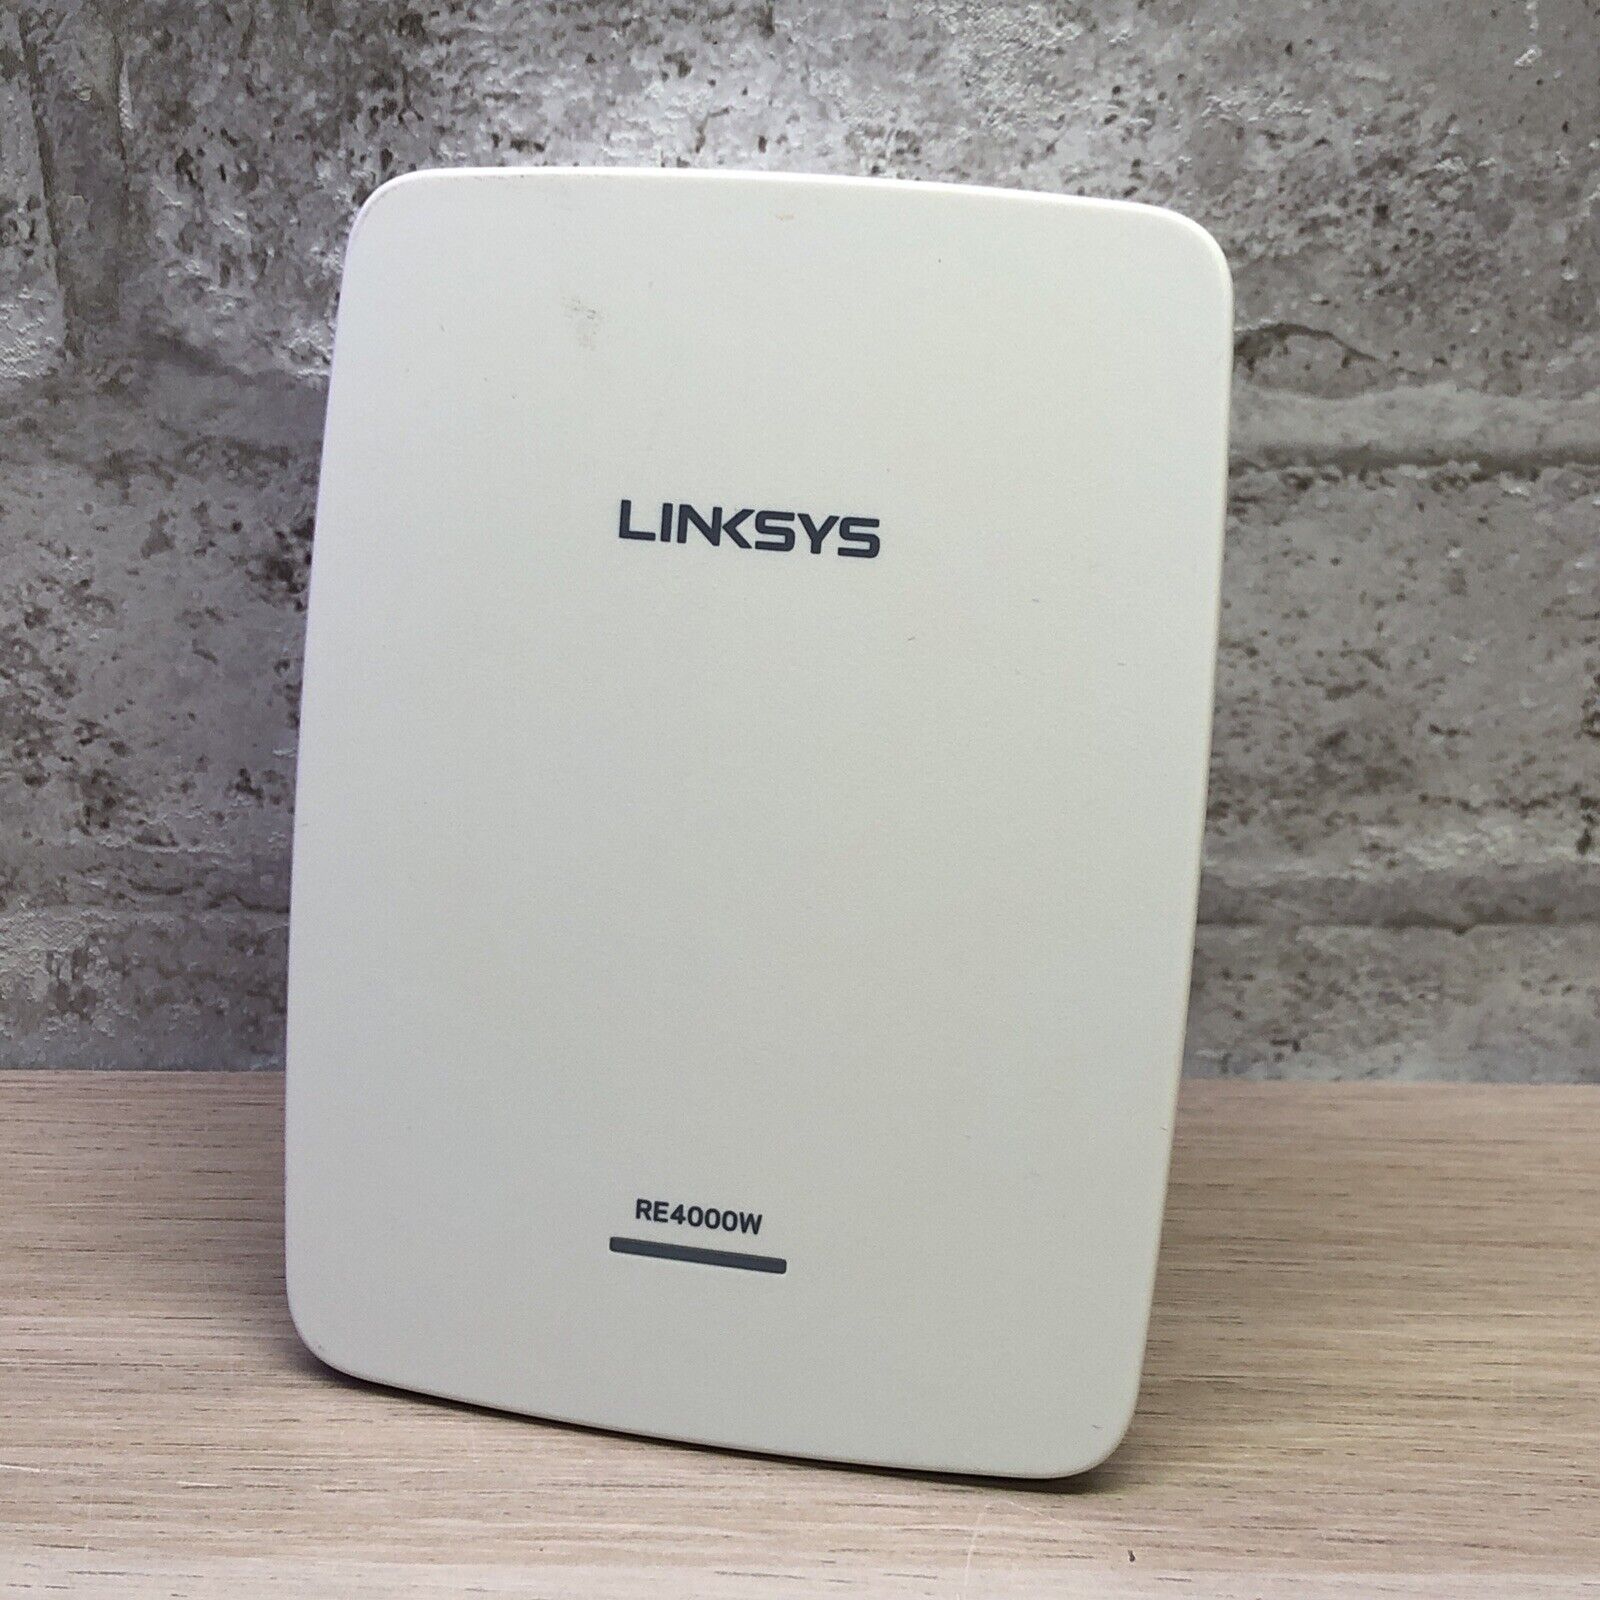 Linksys RE4000W WiFi Range Extender 